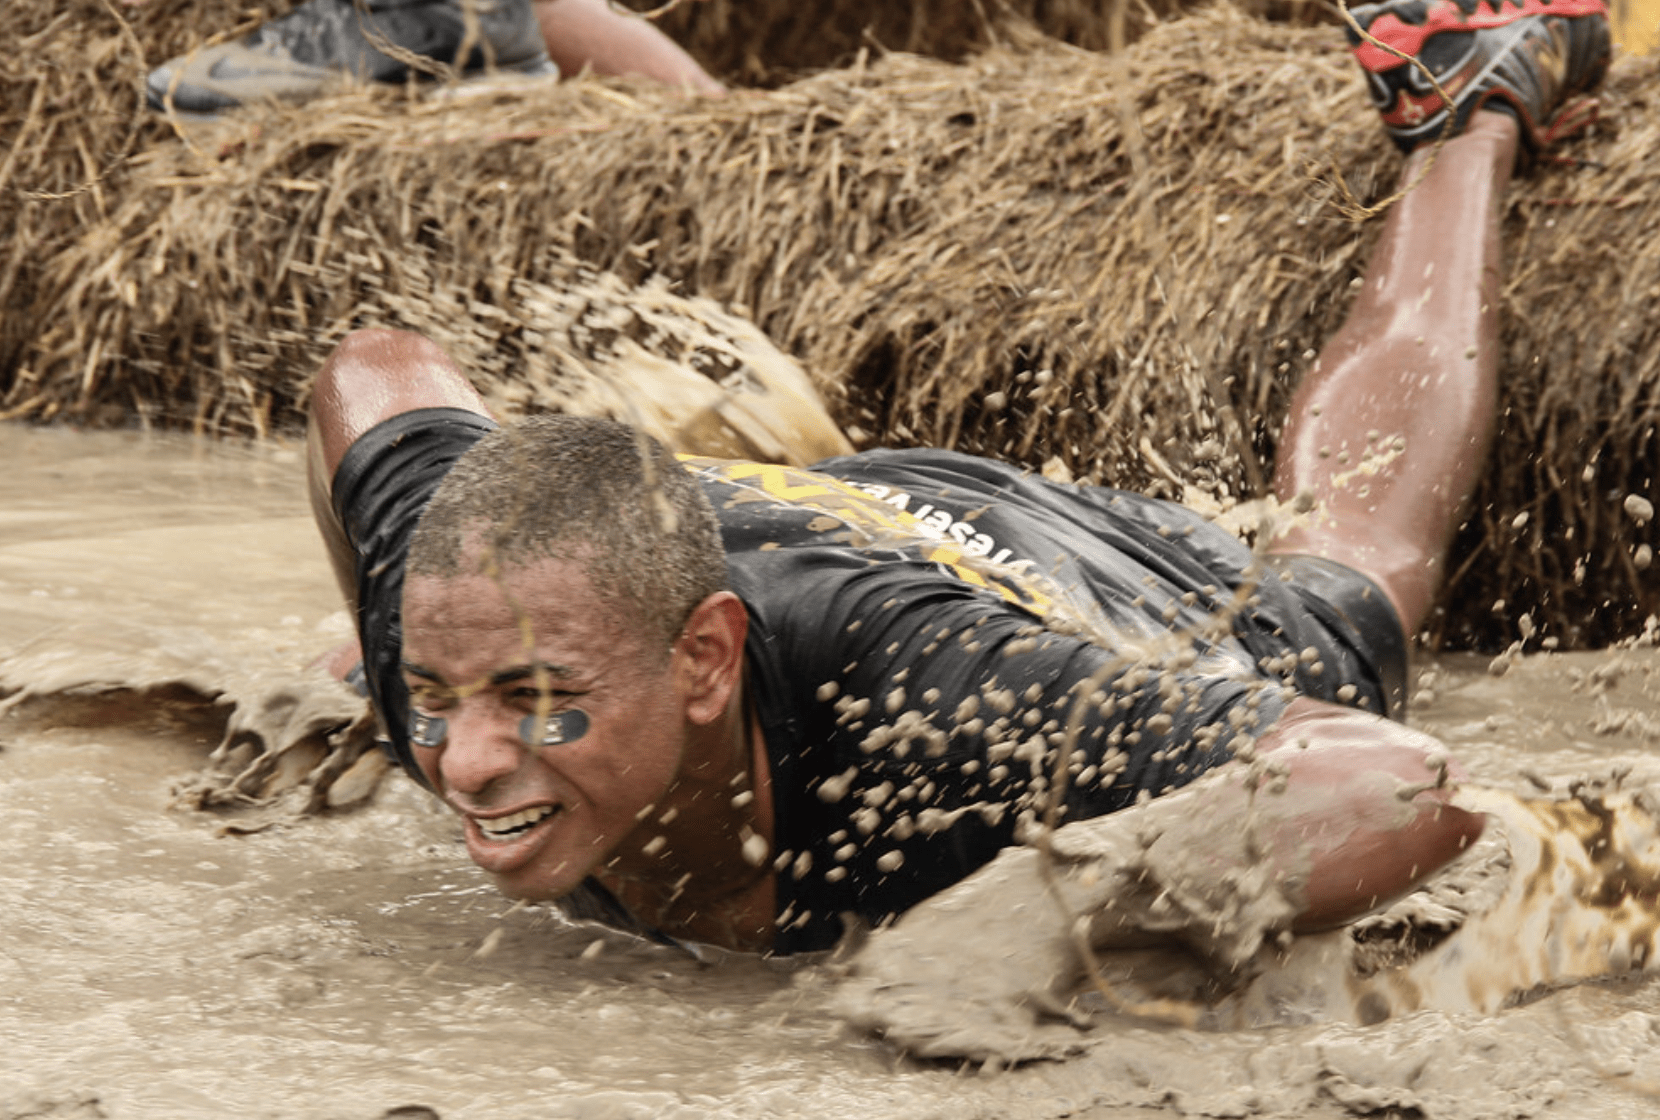 Game participant crawls through mud